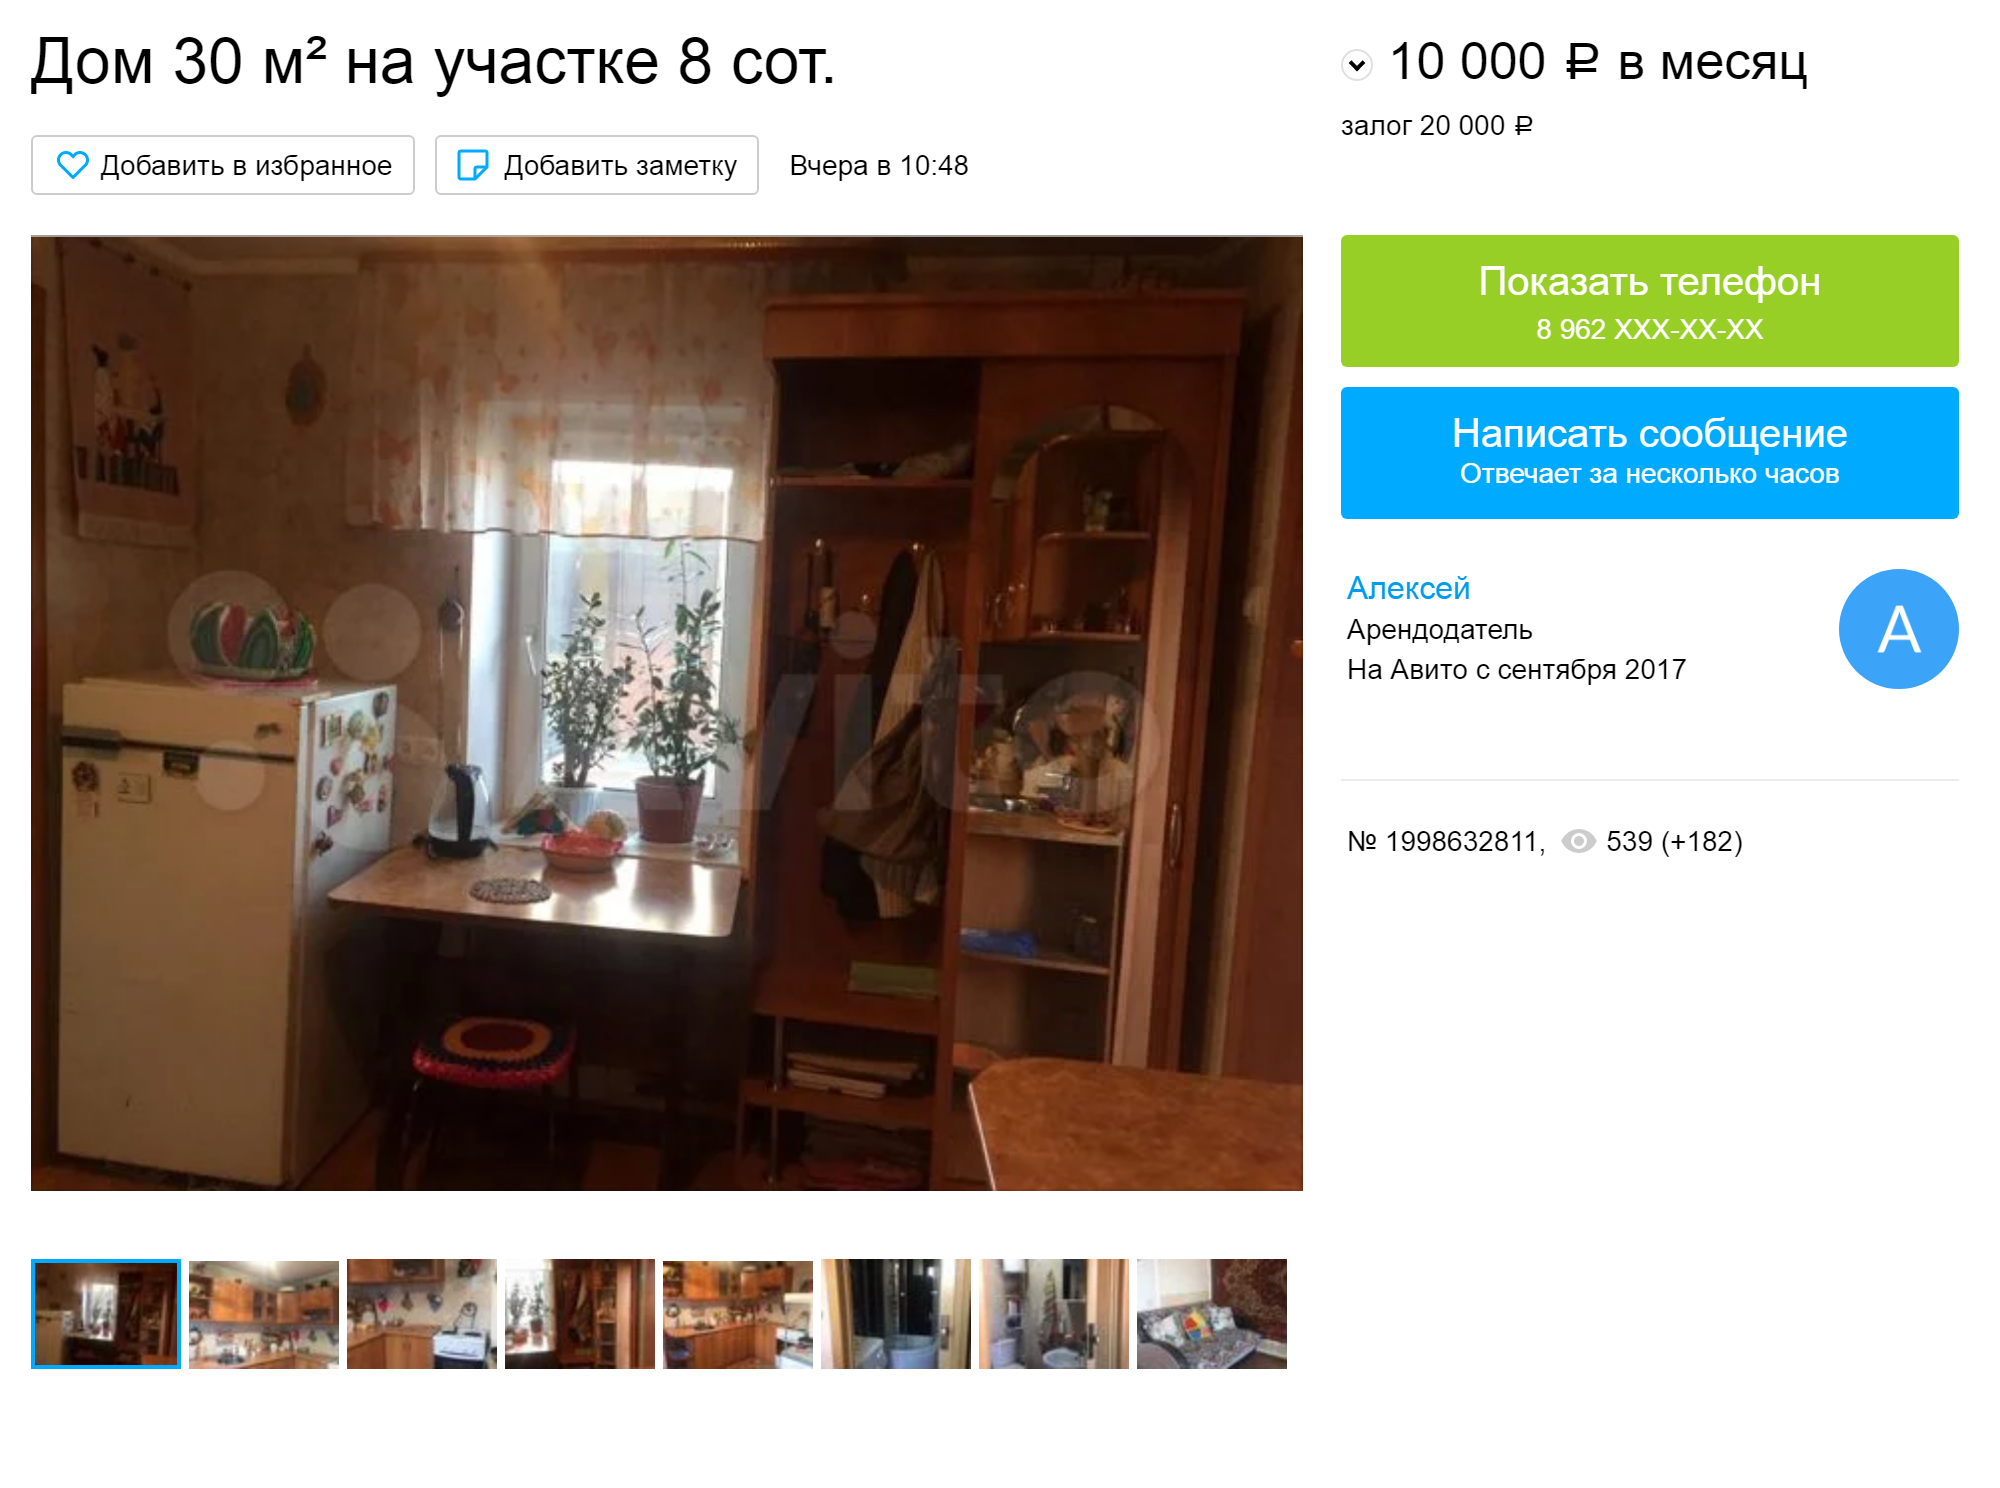 Дом, который по площади равен однокомнатной квартире, можно снять за 10 тысяч рублей. Источник: «Авито»